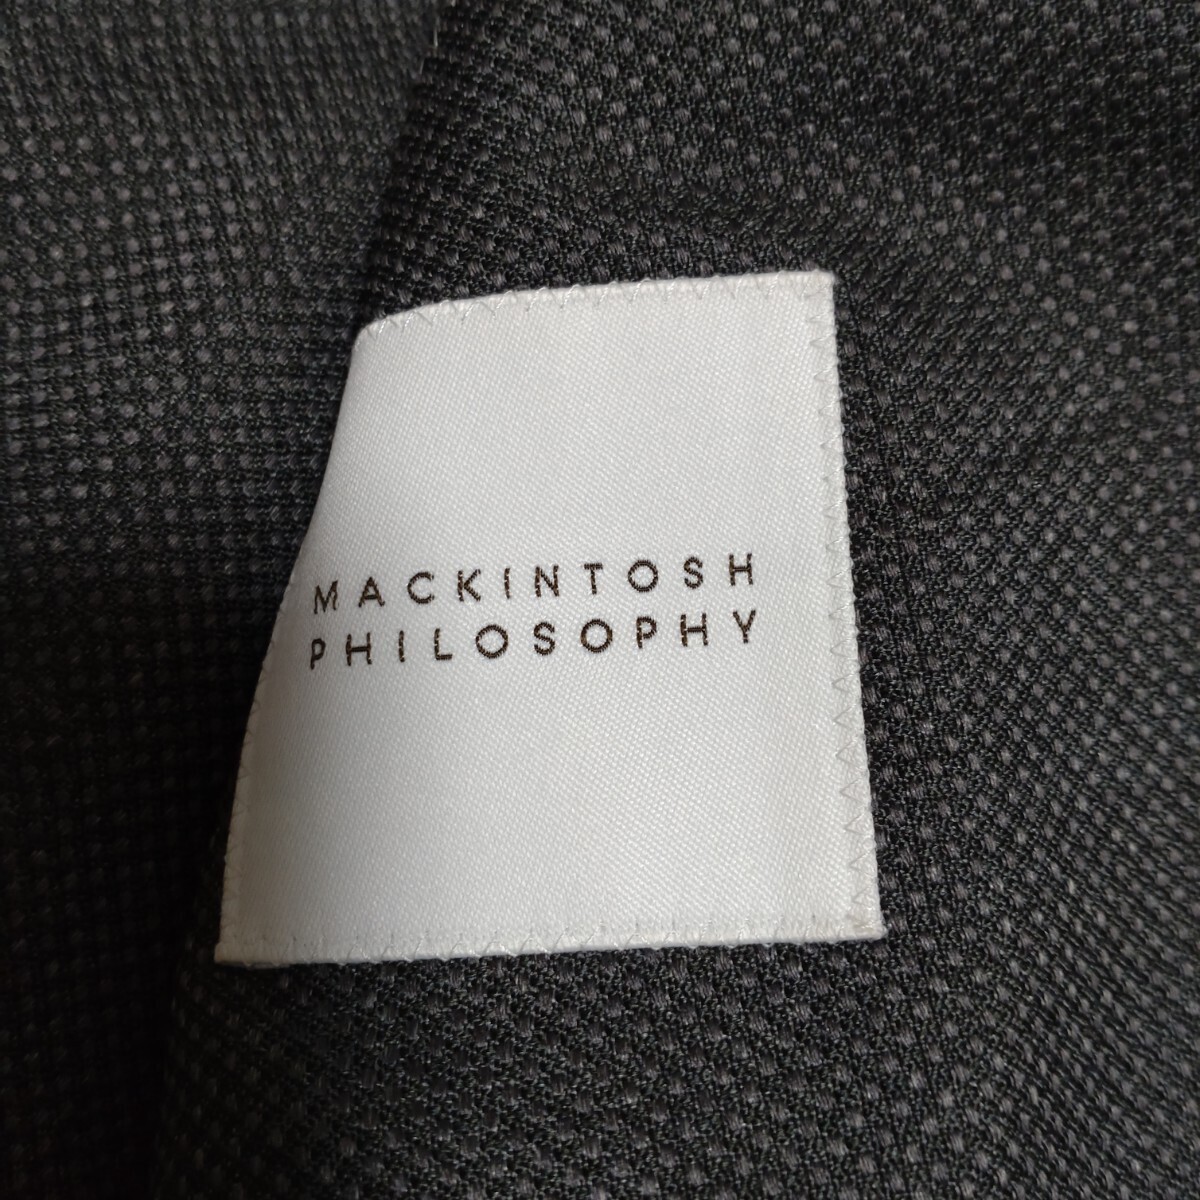  действующий товар Macintosh MACKINTOSH Toro ta-TROTTER 3 деталь брюки 2 шт полиэстер лучший 2B темно-серый лето костюм 